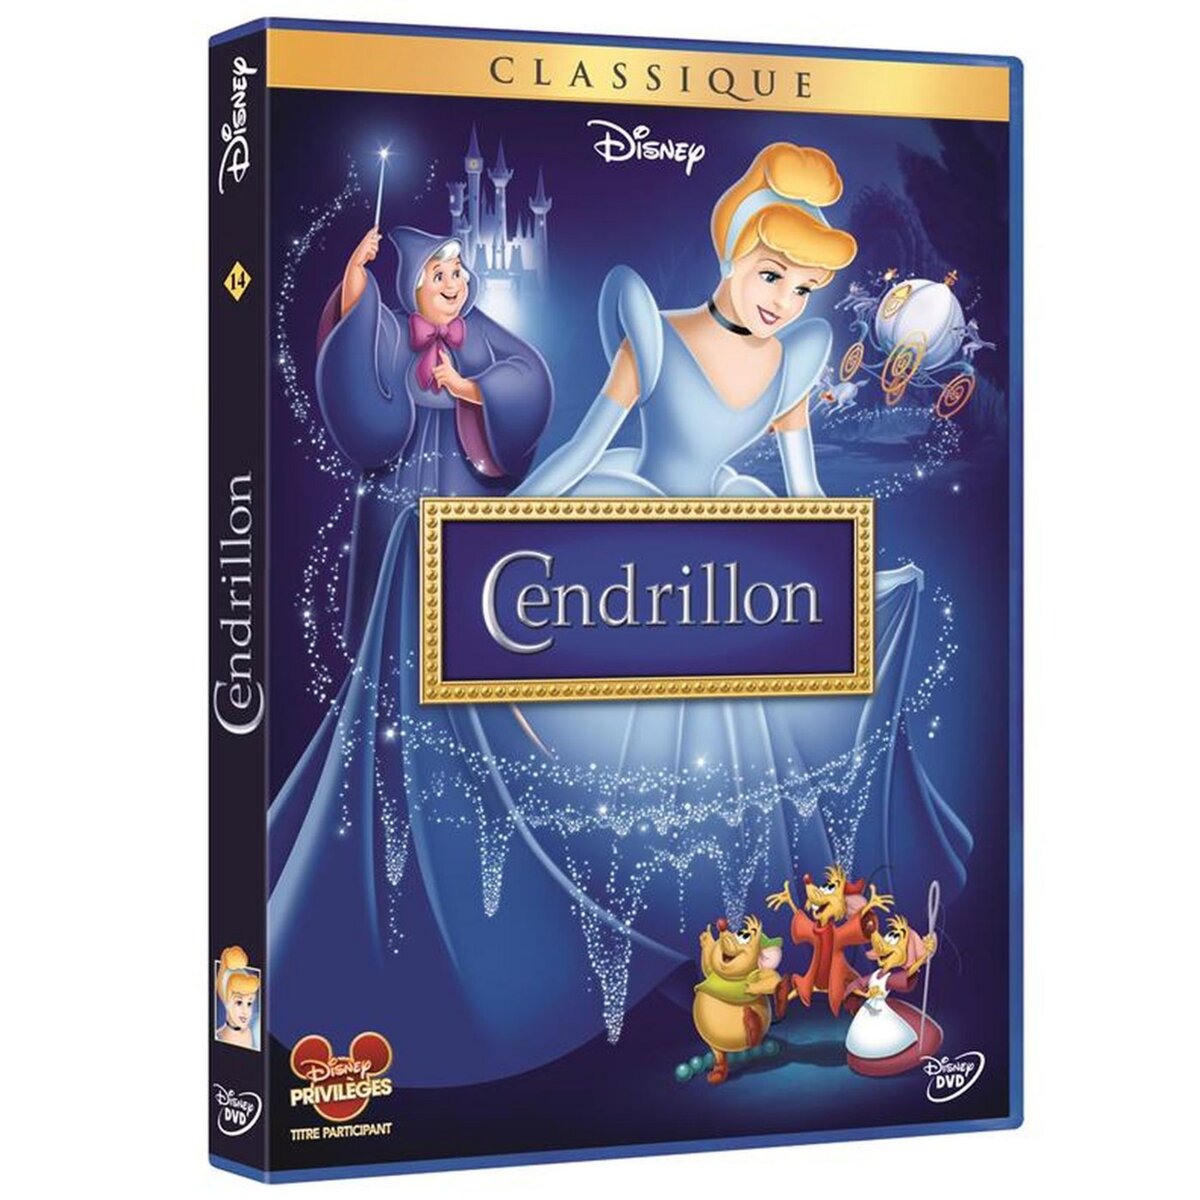 Cendrillon DVD